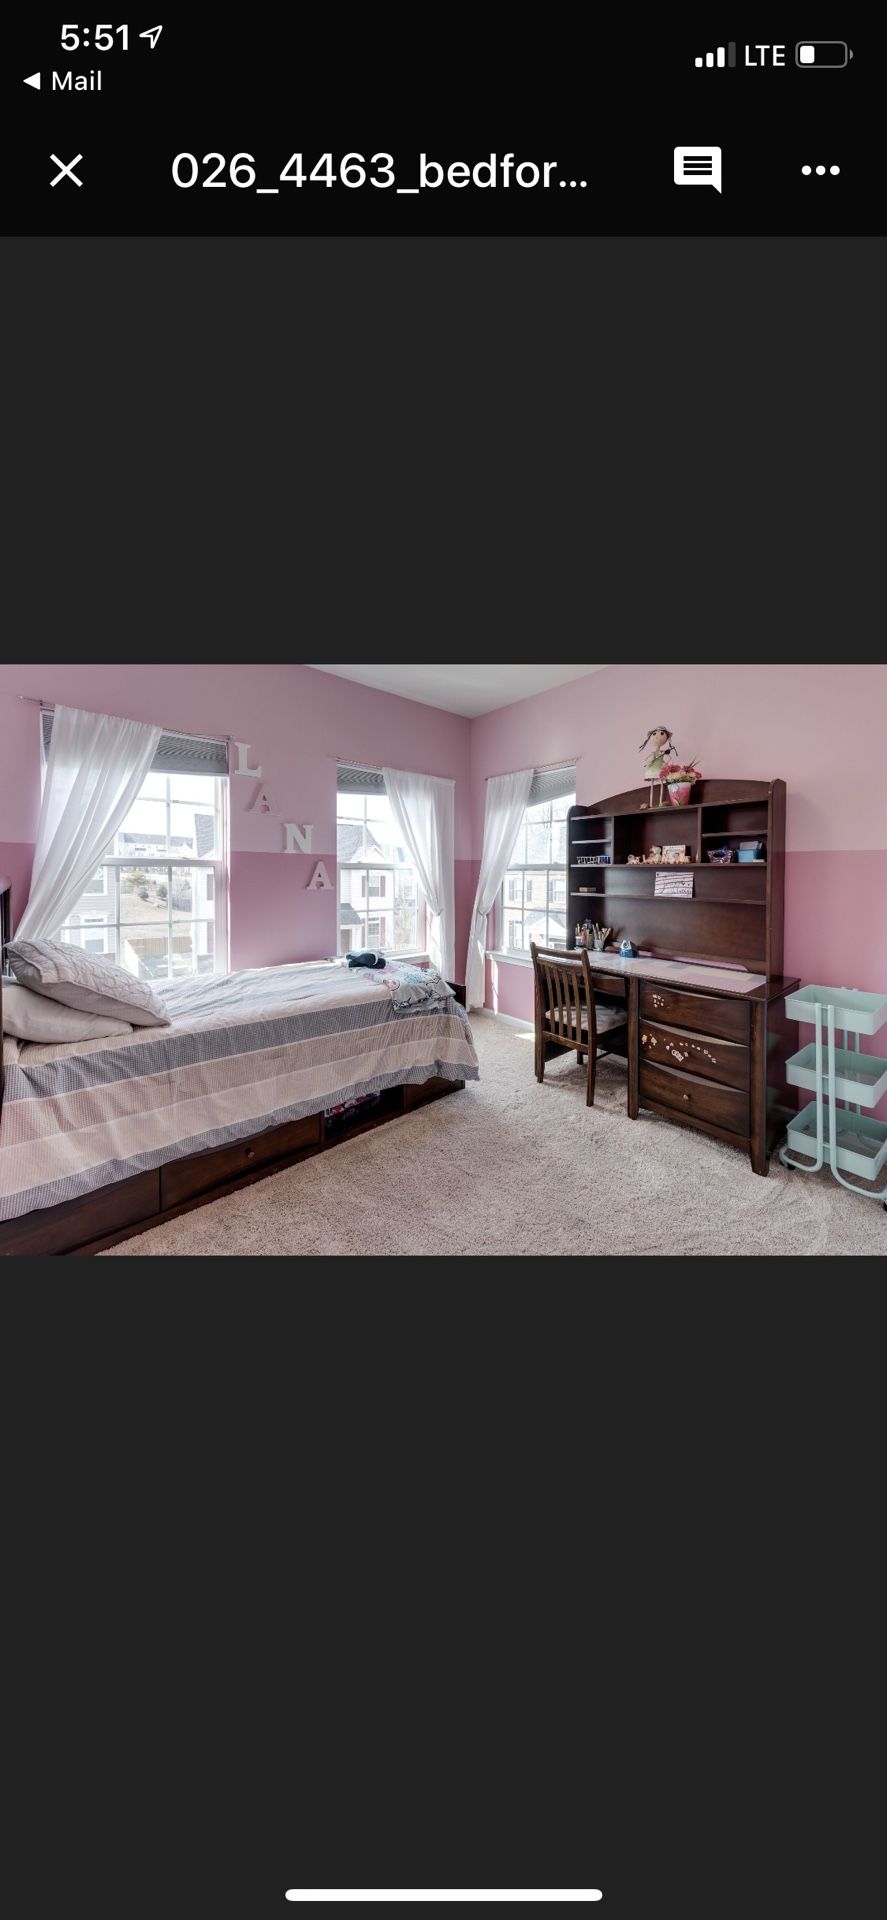 Twin bedroom set